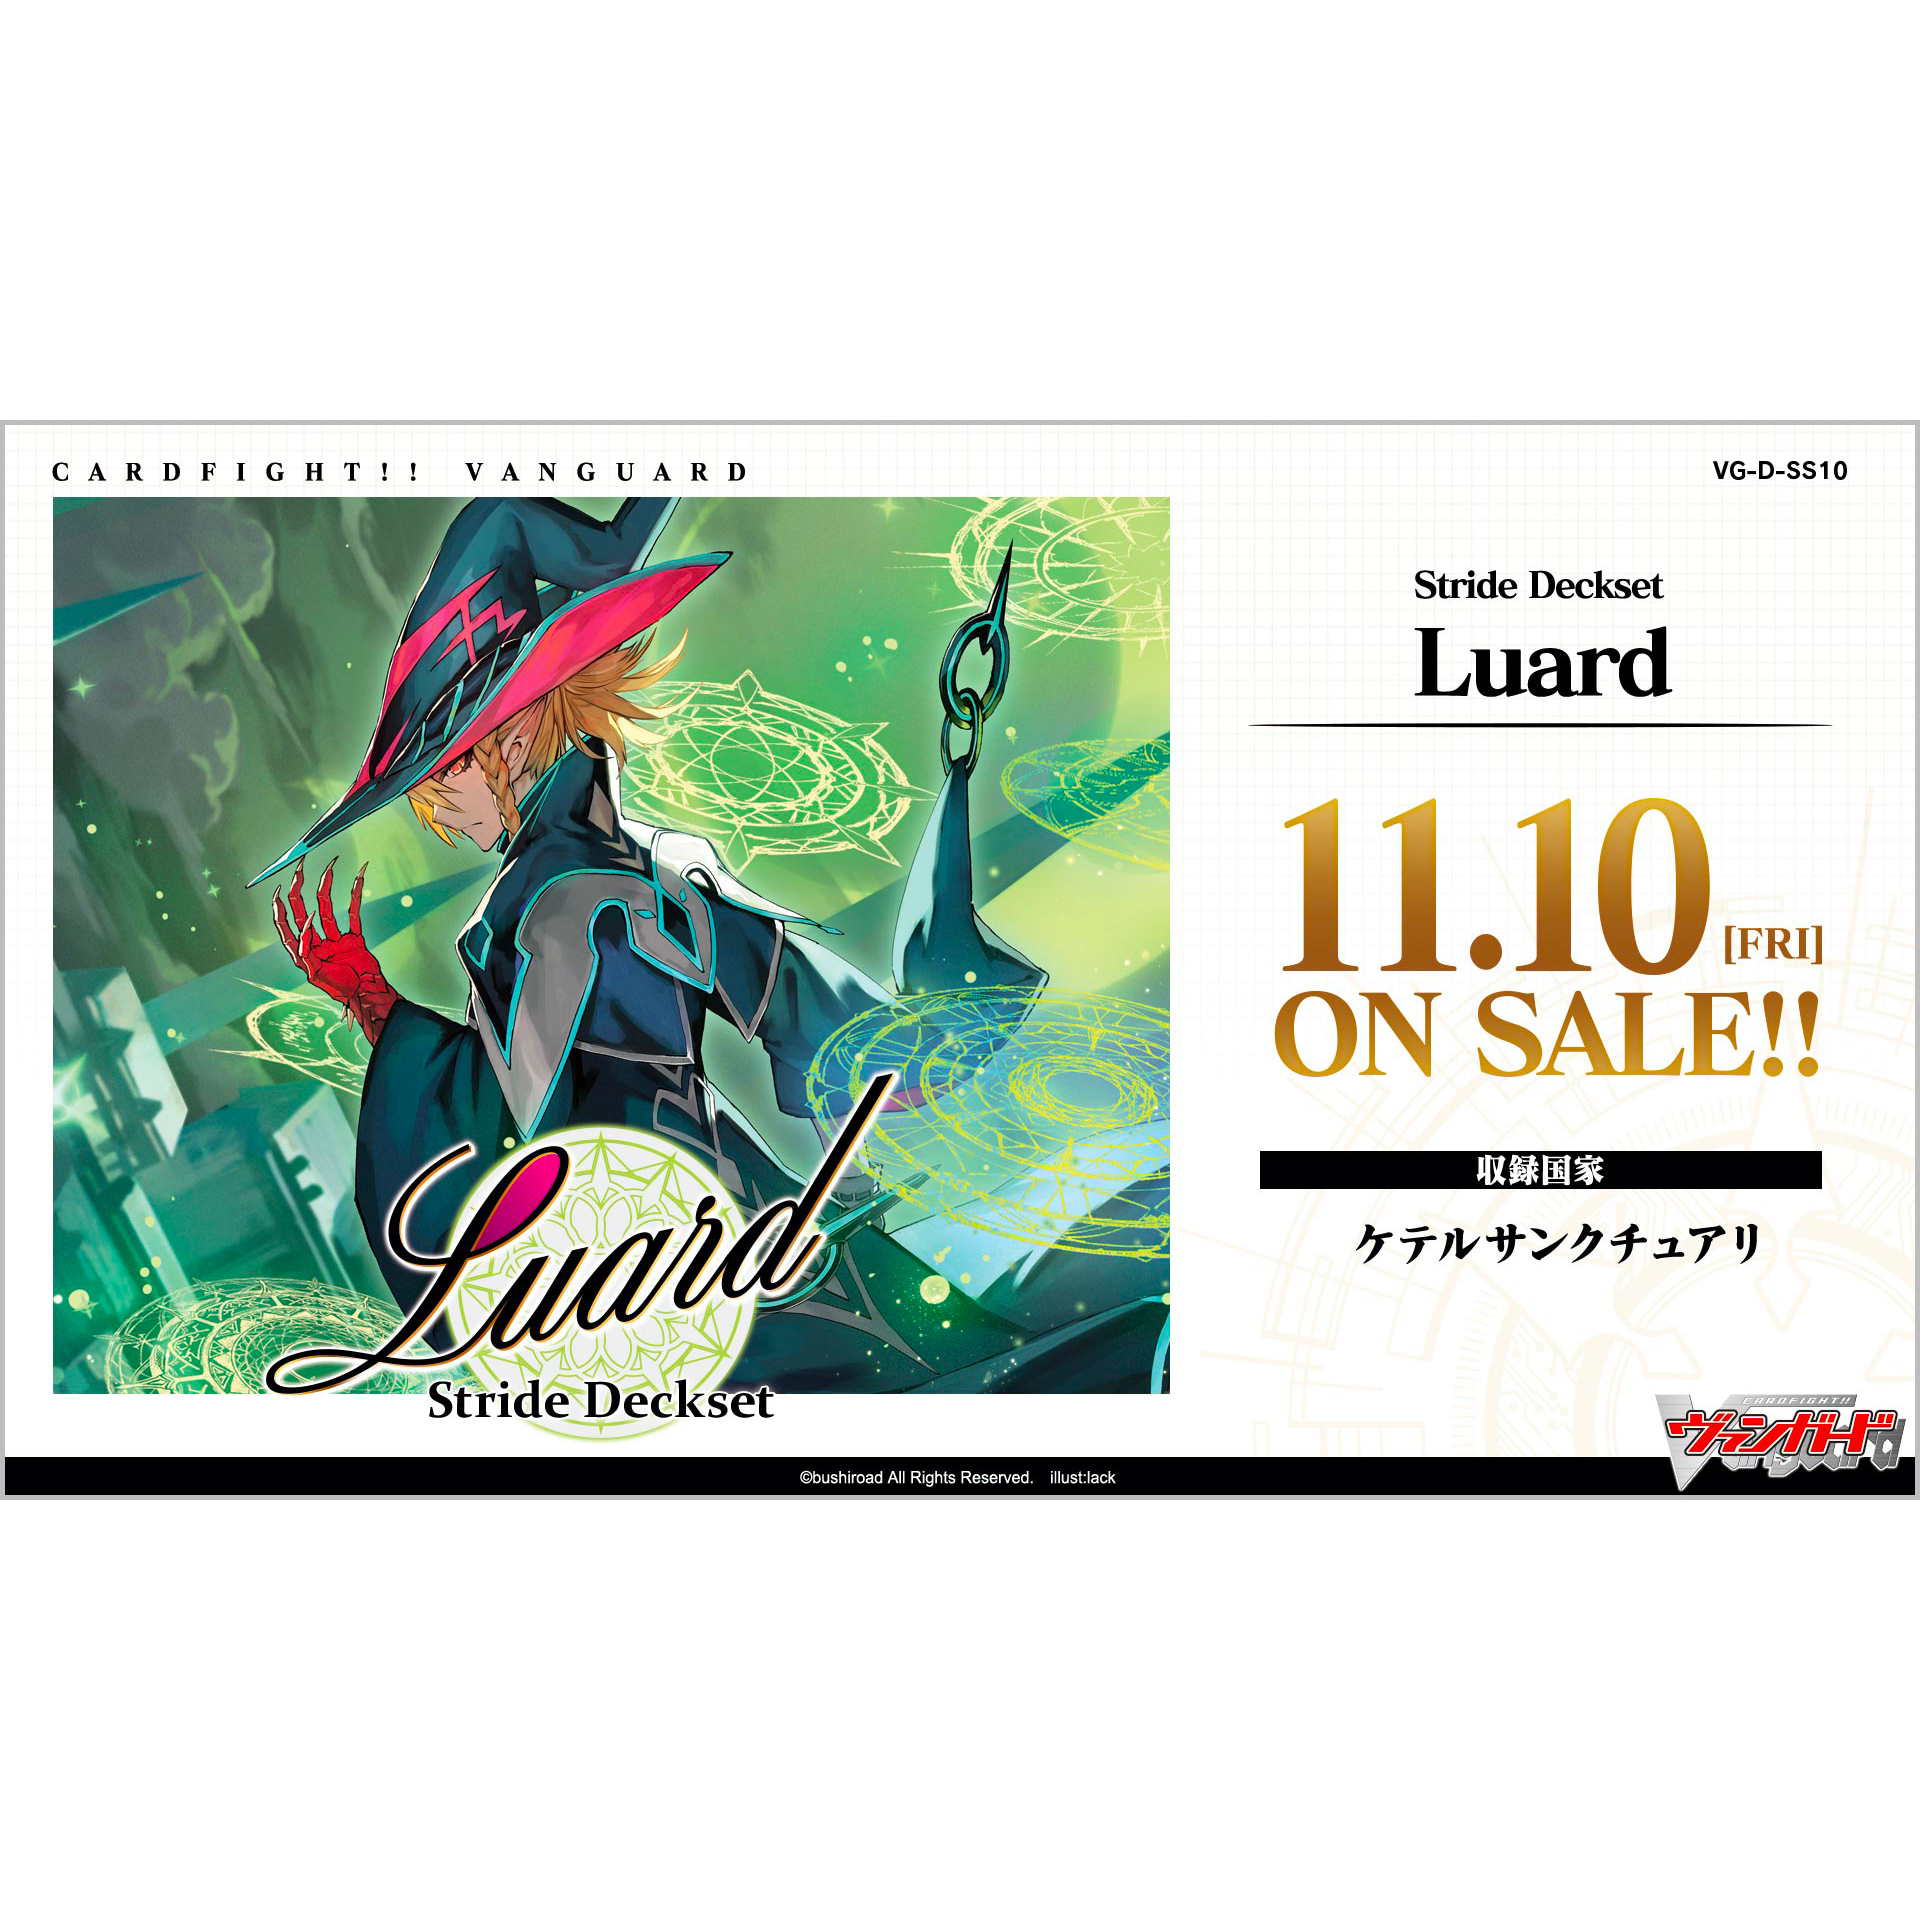 [VG-D-SS10] CARDFIGHT!! VANGUARD Special Series 第10弾 ｢Stride Deckset Luard｣